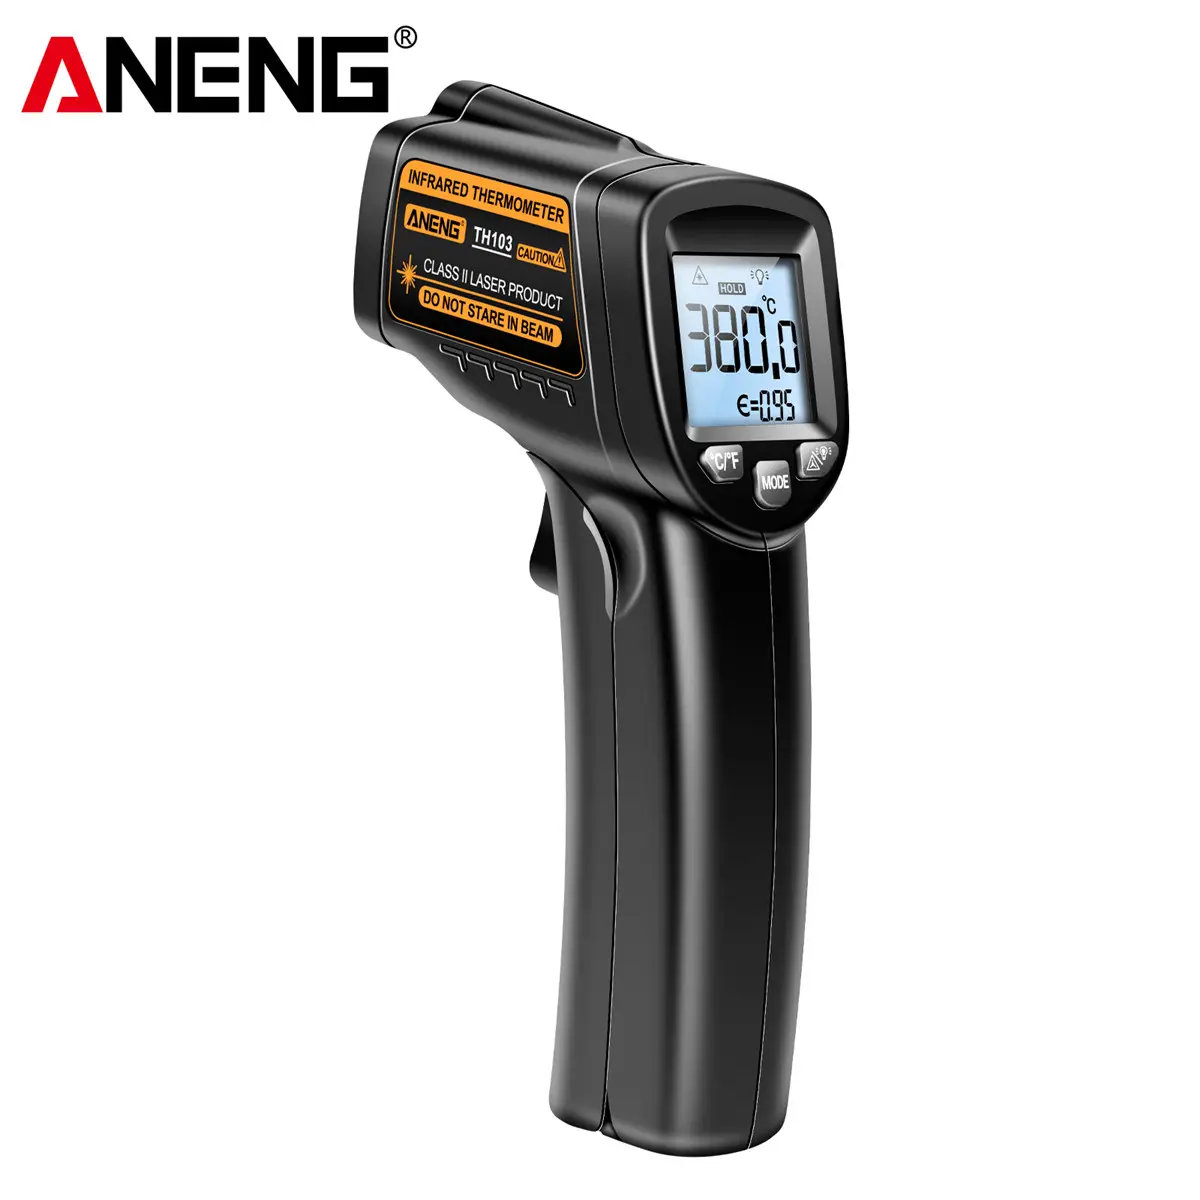 ANENG TH103 Thermomètre laser infrarouge numérique Thermomètre industriel Écran de rétroéclairage Compteur de température Outils sans contact